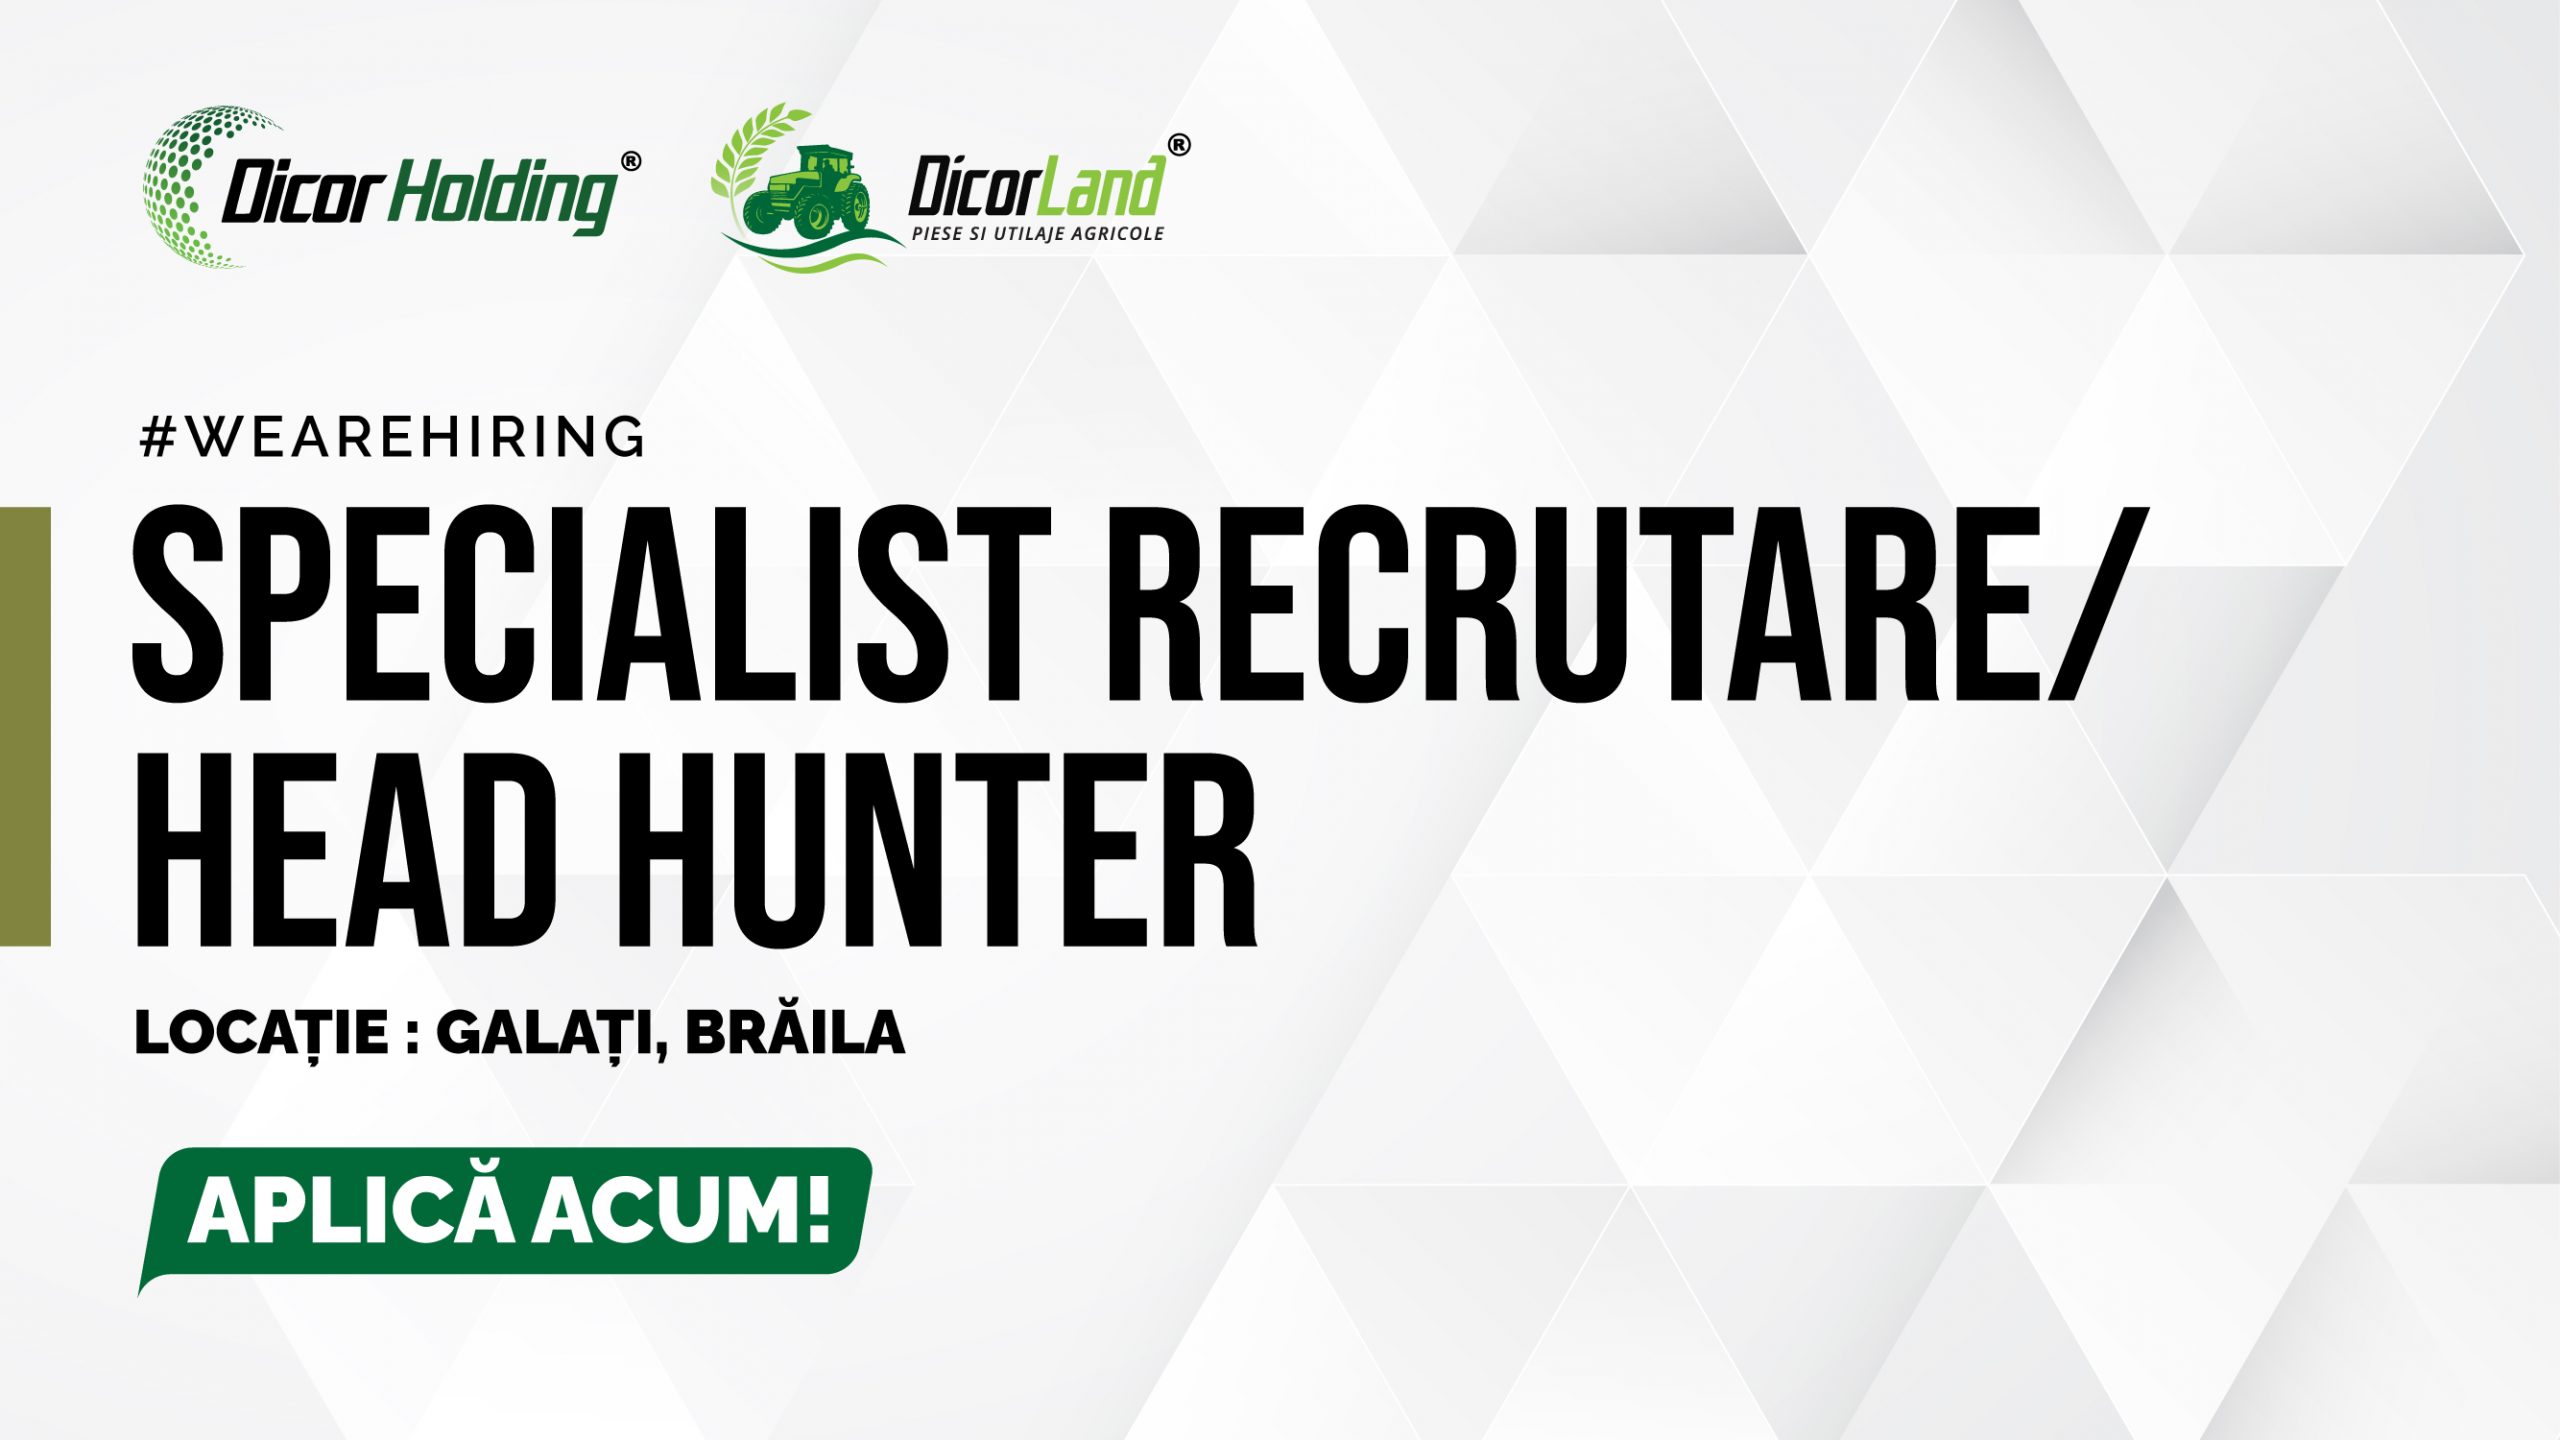 Specialist recrutare/head hunter